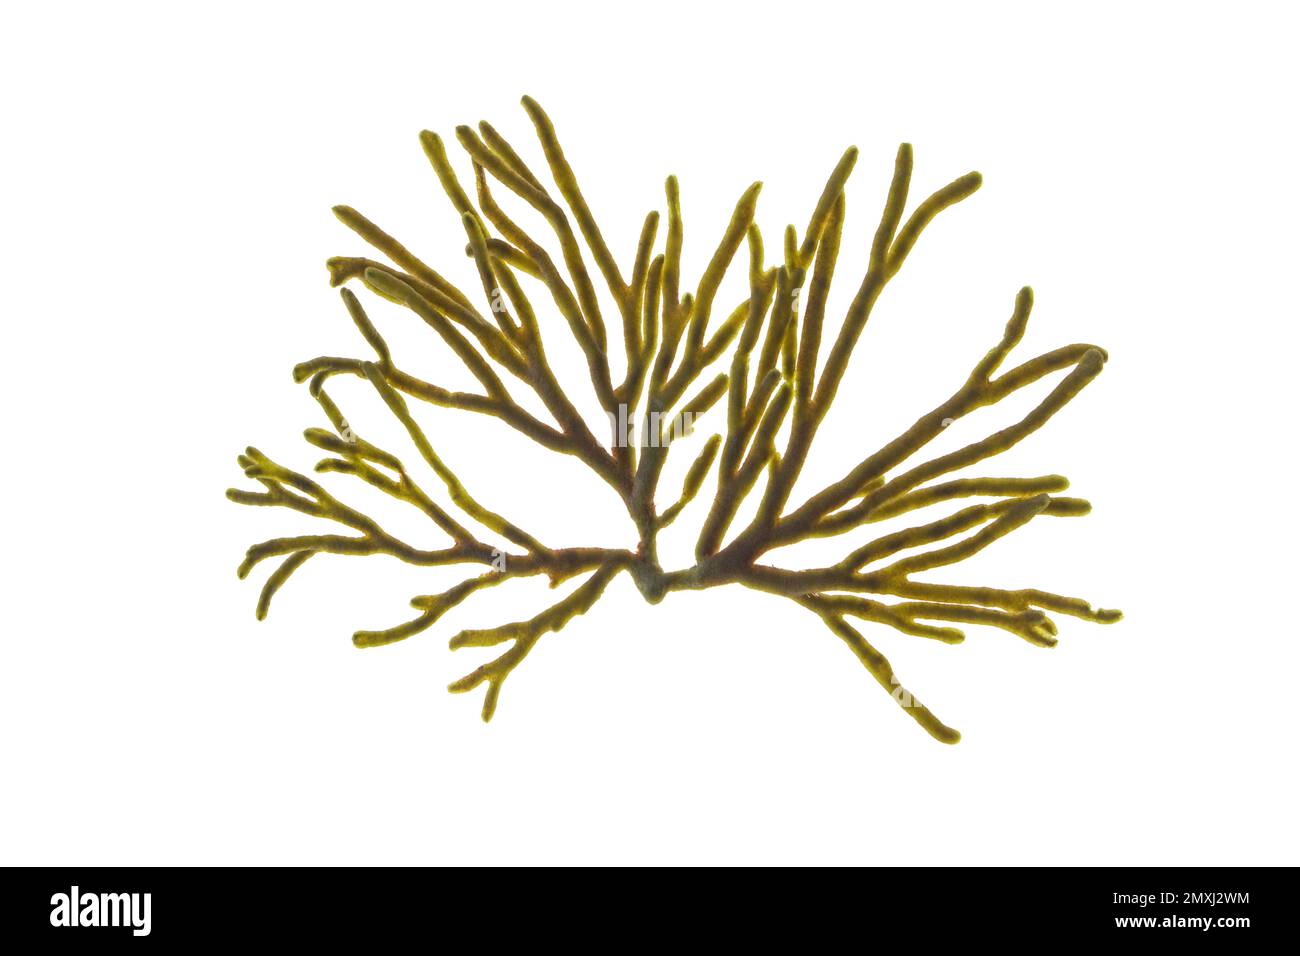 Codium-Tomentosum oder Samthorn oder Spongeweed-Algen, auf weiß isoliert. Grüner Algenzweig. Stockfoto